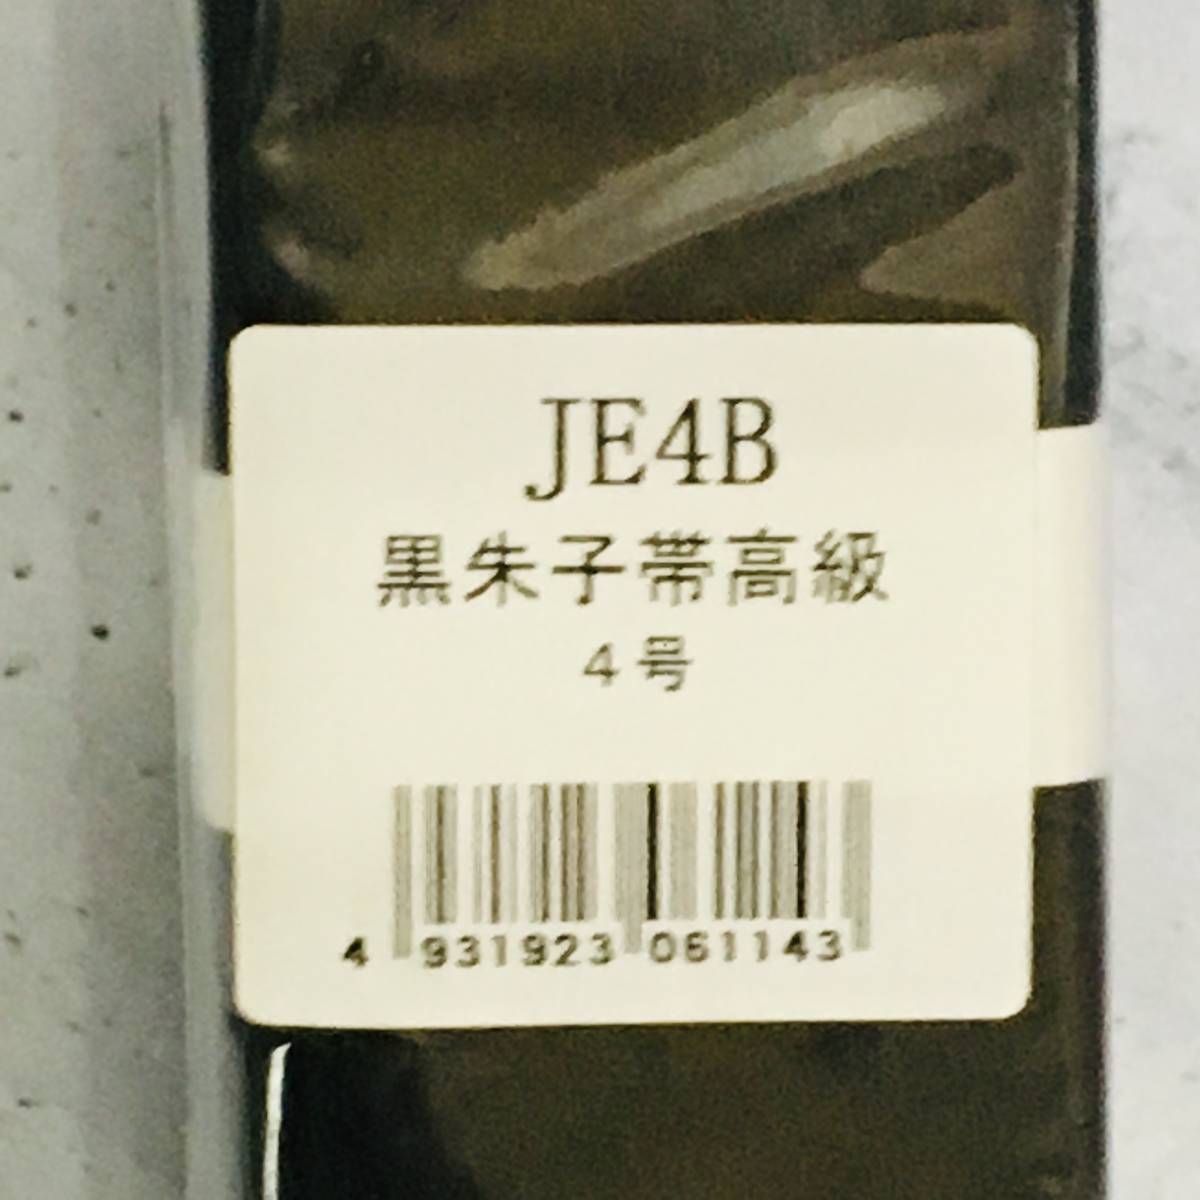  новый товар не использовался товар * 9 Sakura kuzakura*[ дзюдо чёрный .. obi 4 номер ]JE4B * сделано в Японии 